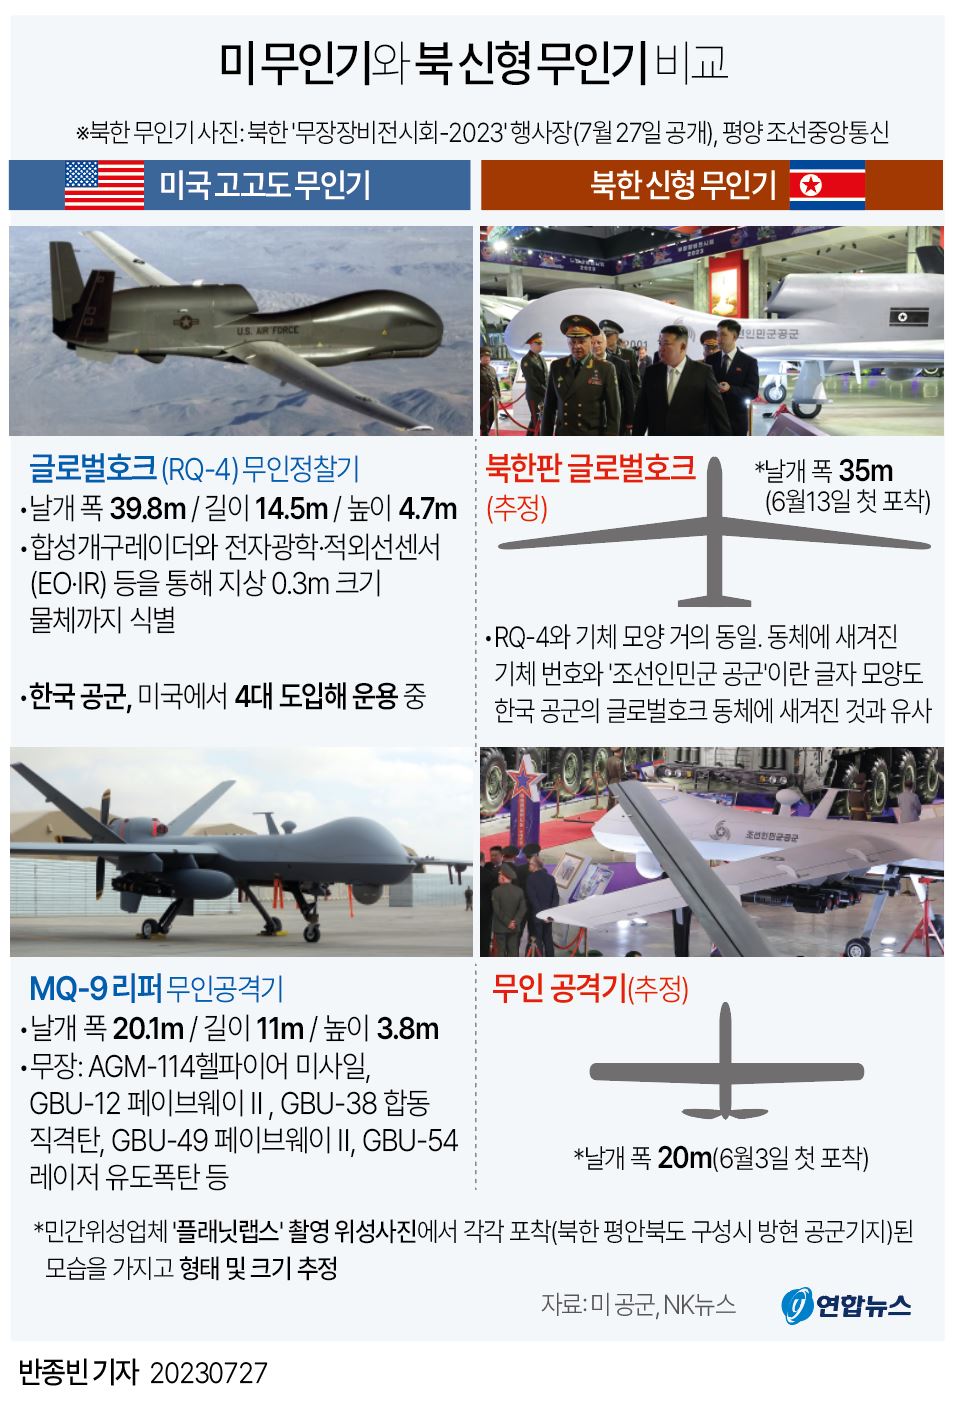 [그래픽] 미국 고고도 무인기와 북한 신형 무인기 비교